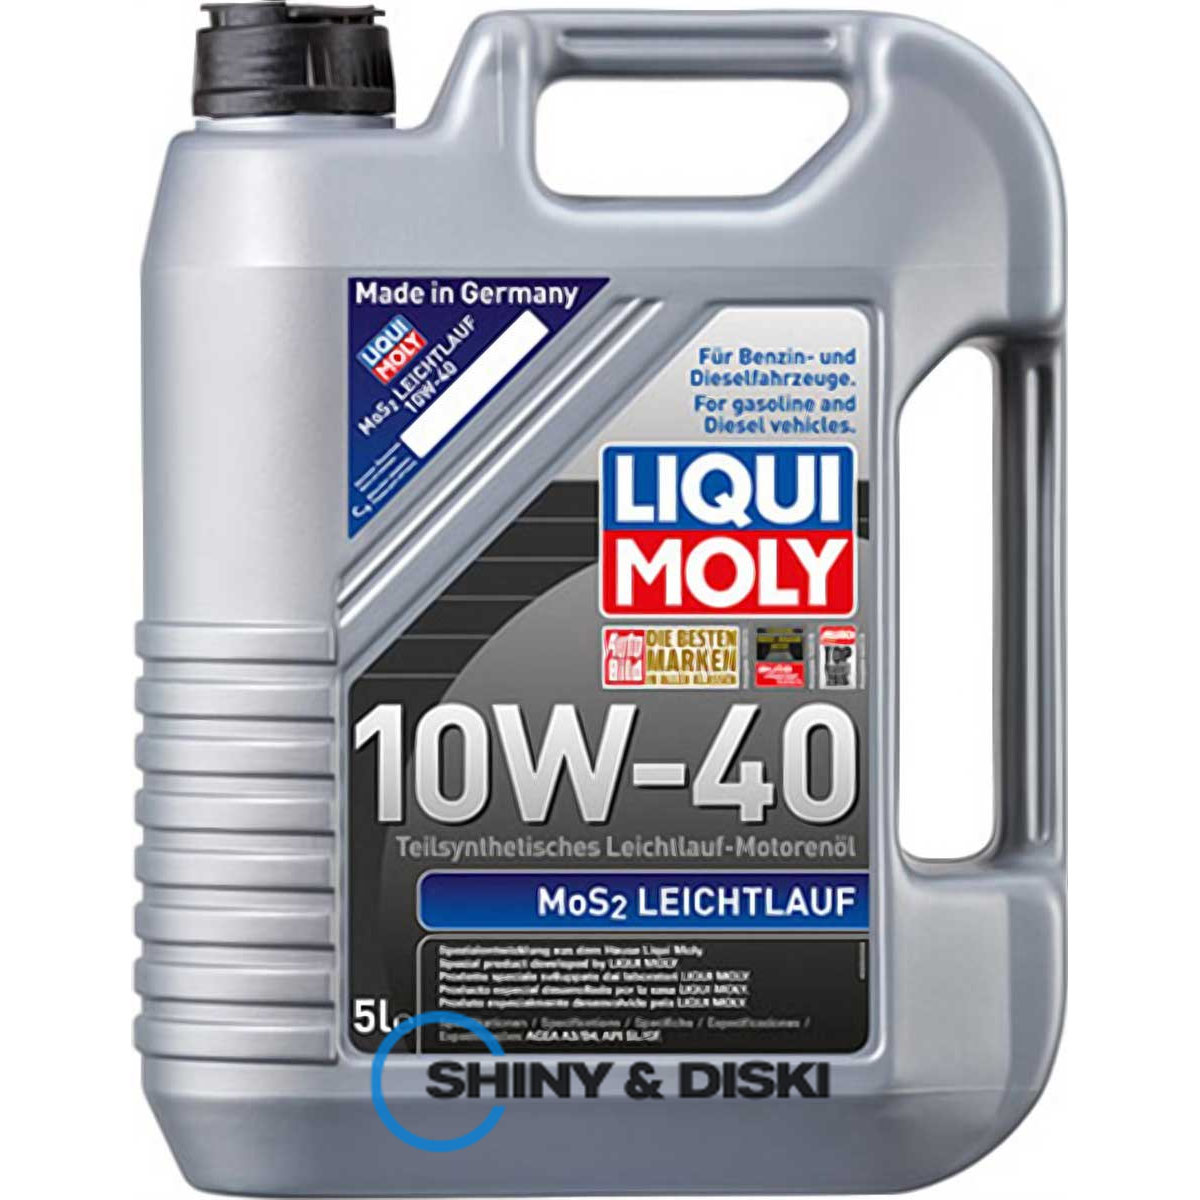 liqui moly mos2 leichtlauf 10w-40 (5л)